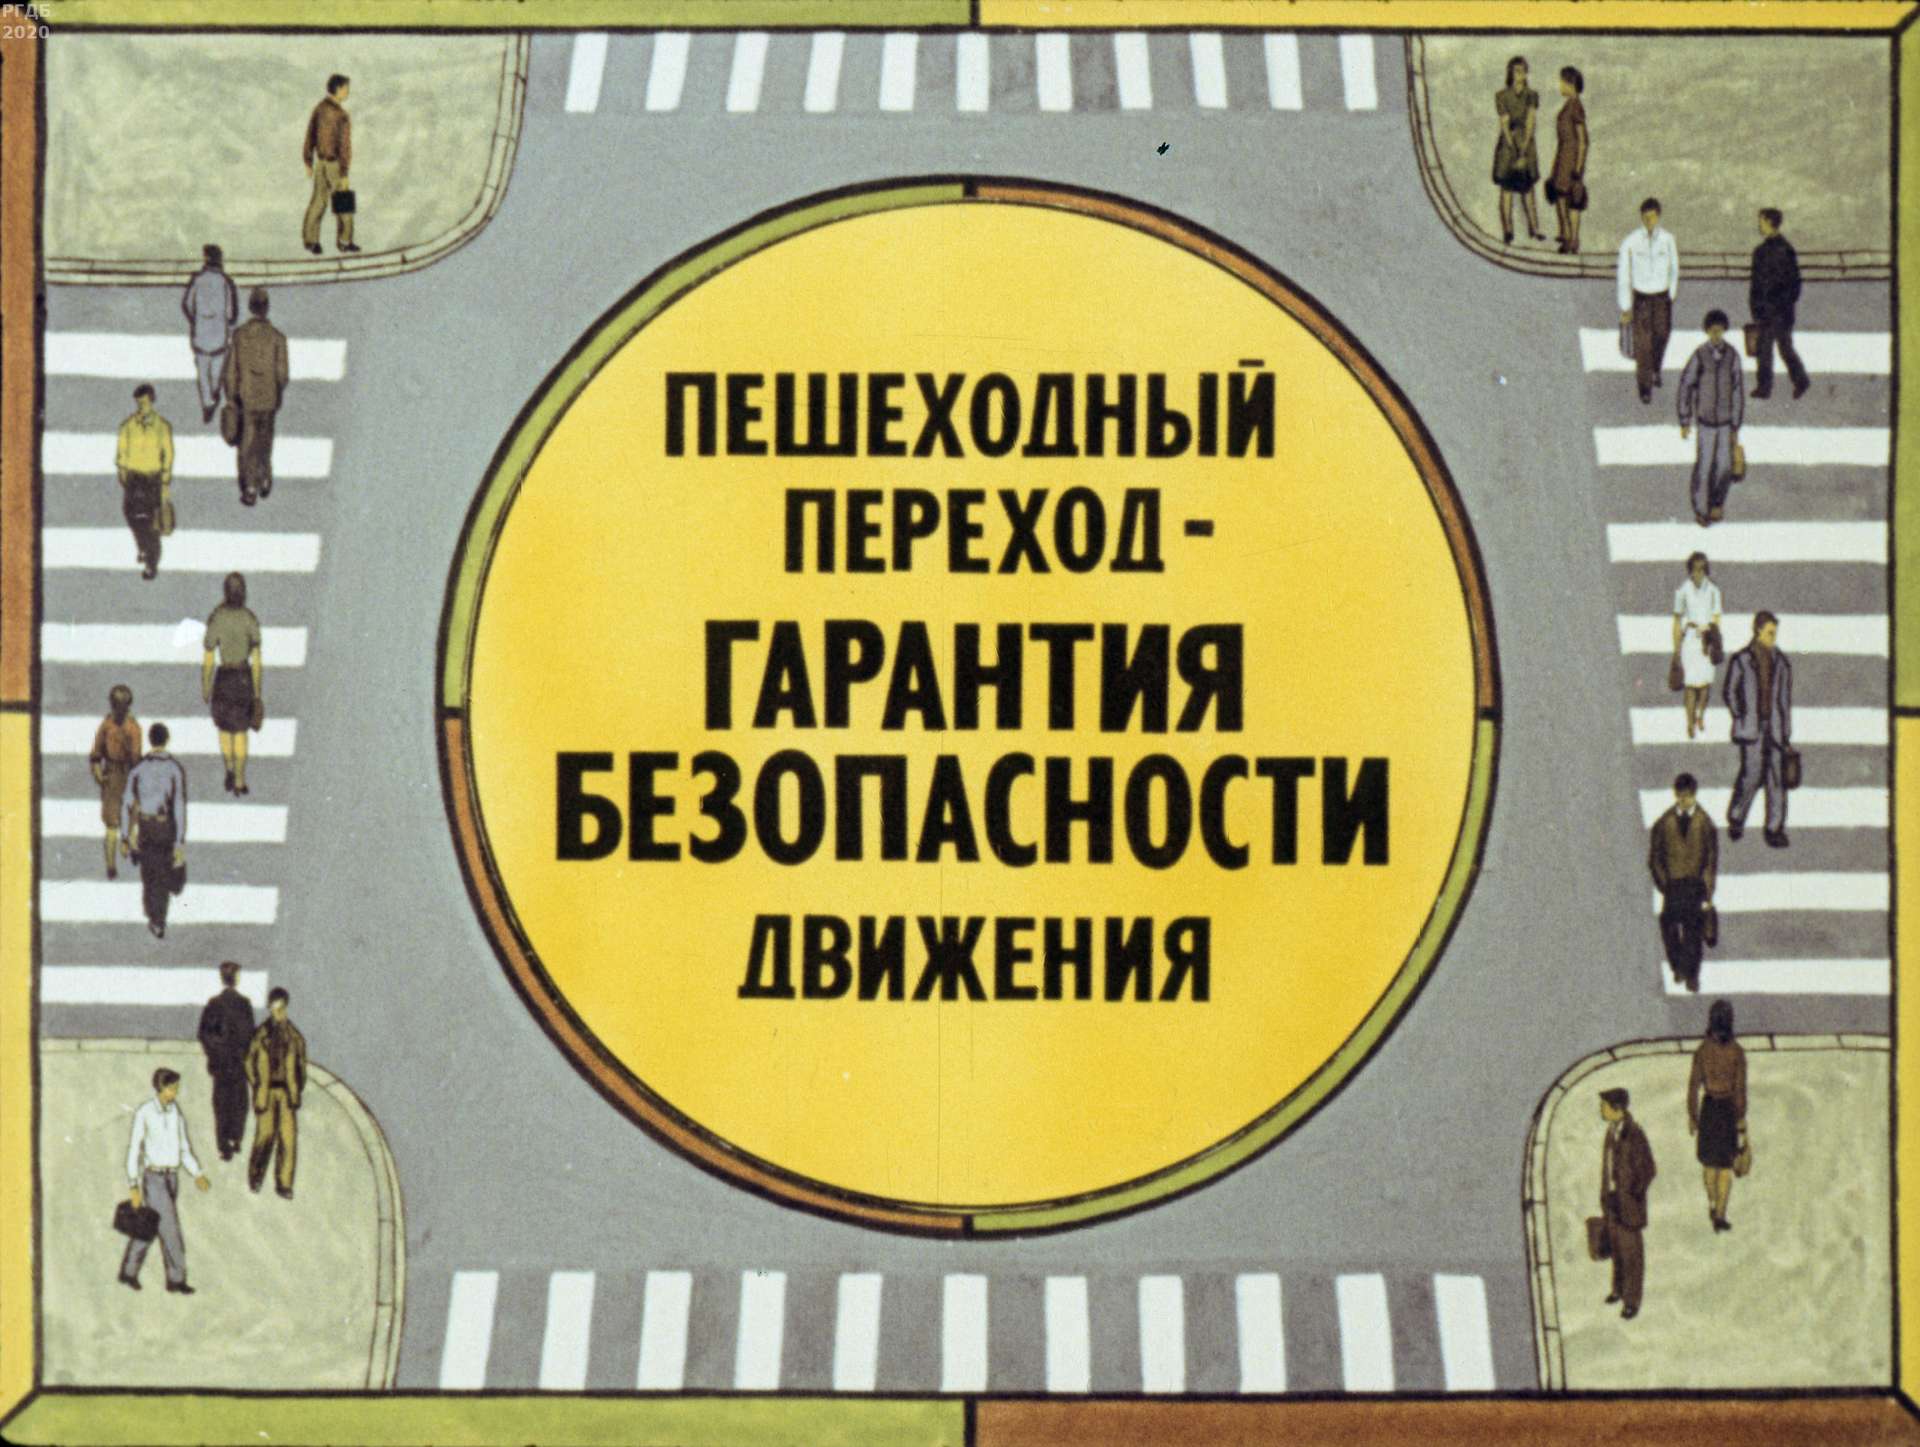 Серов Ю. Н. - Пешеходный переход - гарантия безопасности движения - 1982